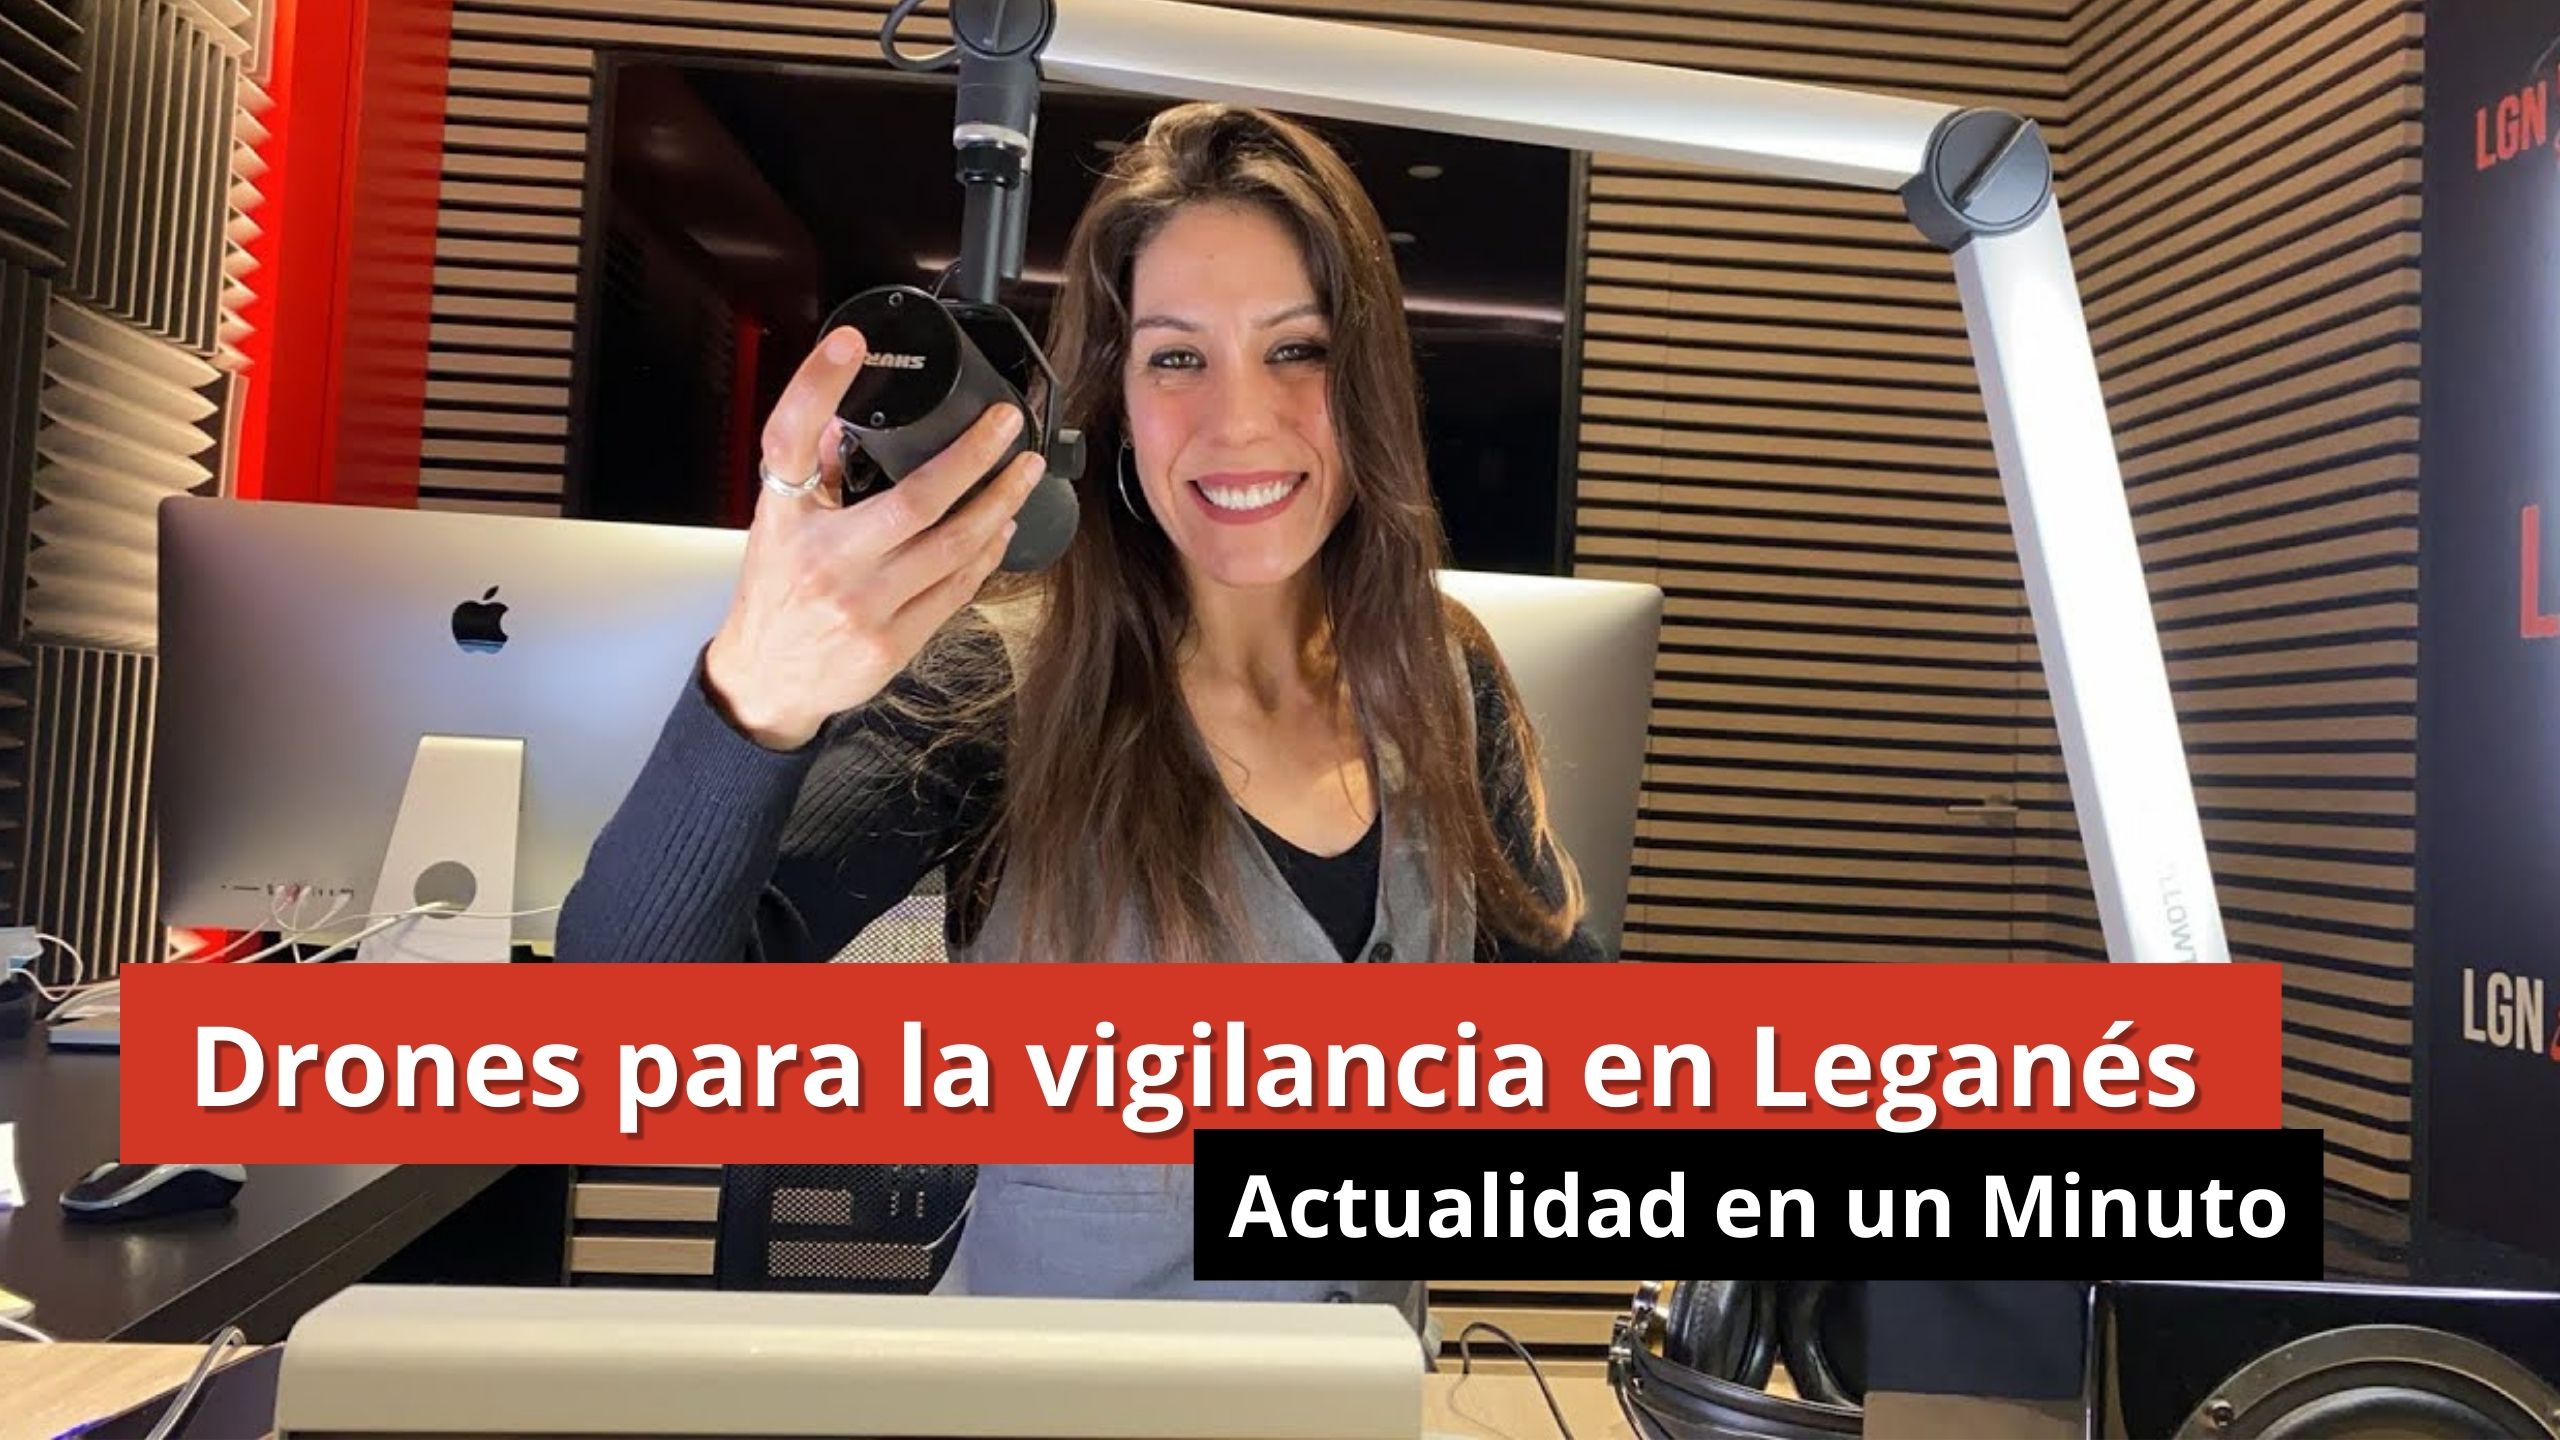 15-01-24 Drones para la vigilancia en Leganés - Actualidad en 1 minuto